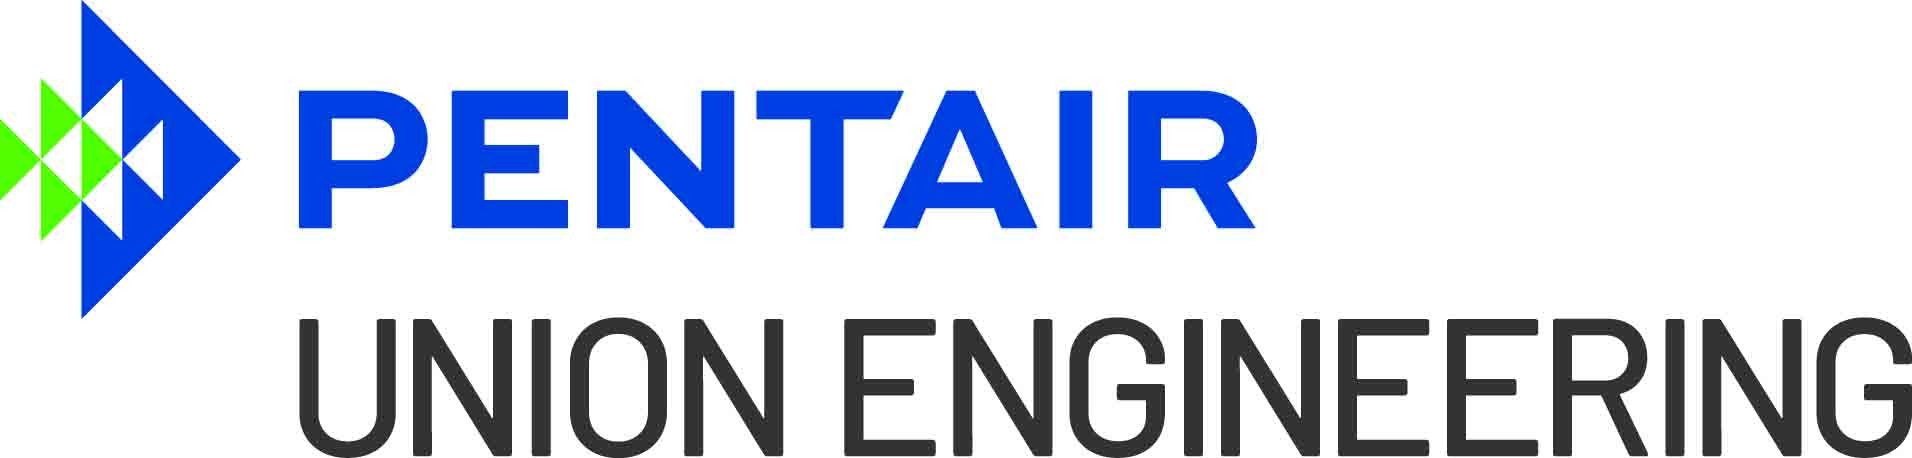 Union Engineering/Pentair logo